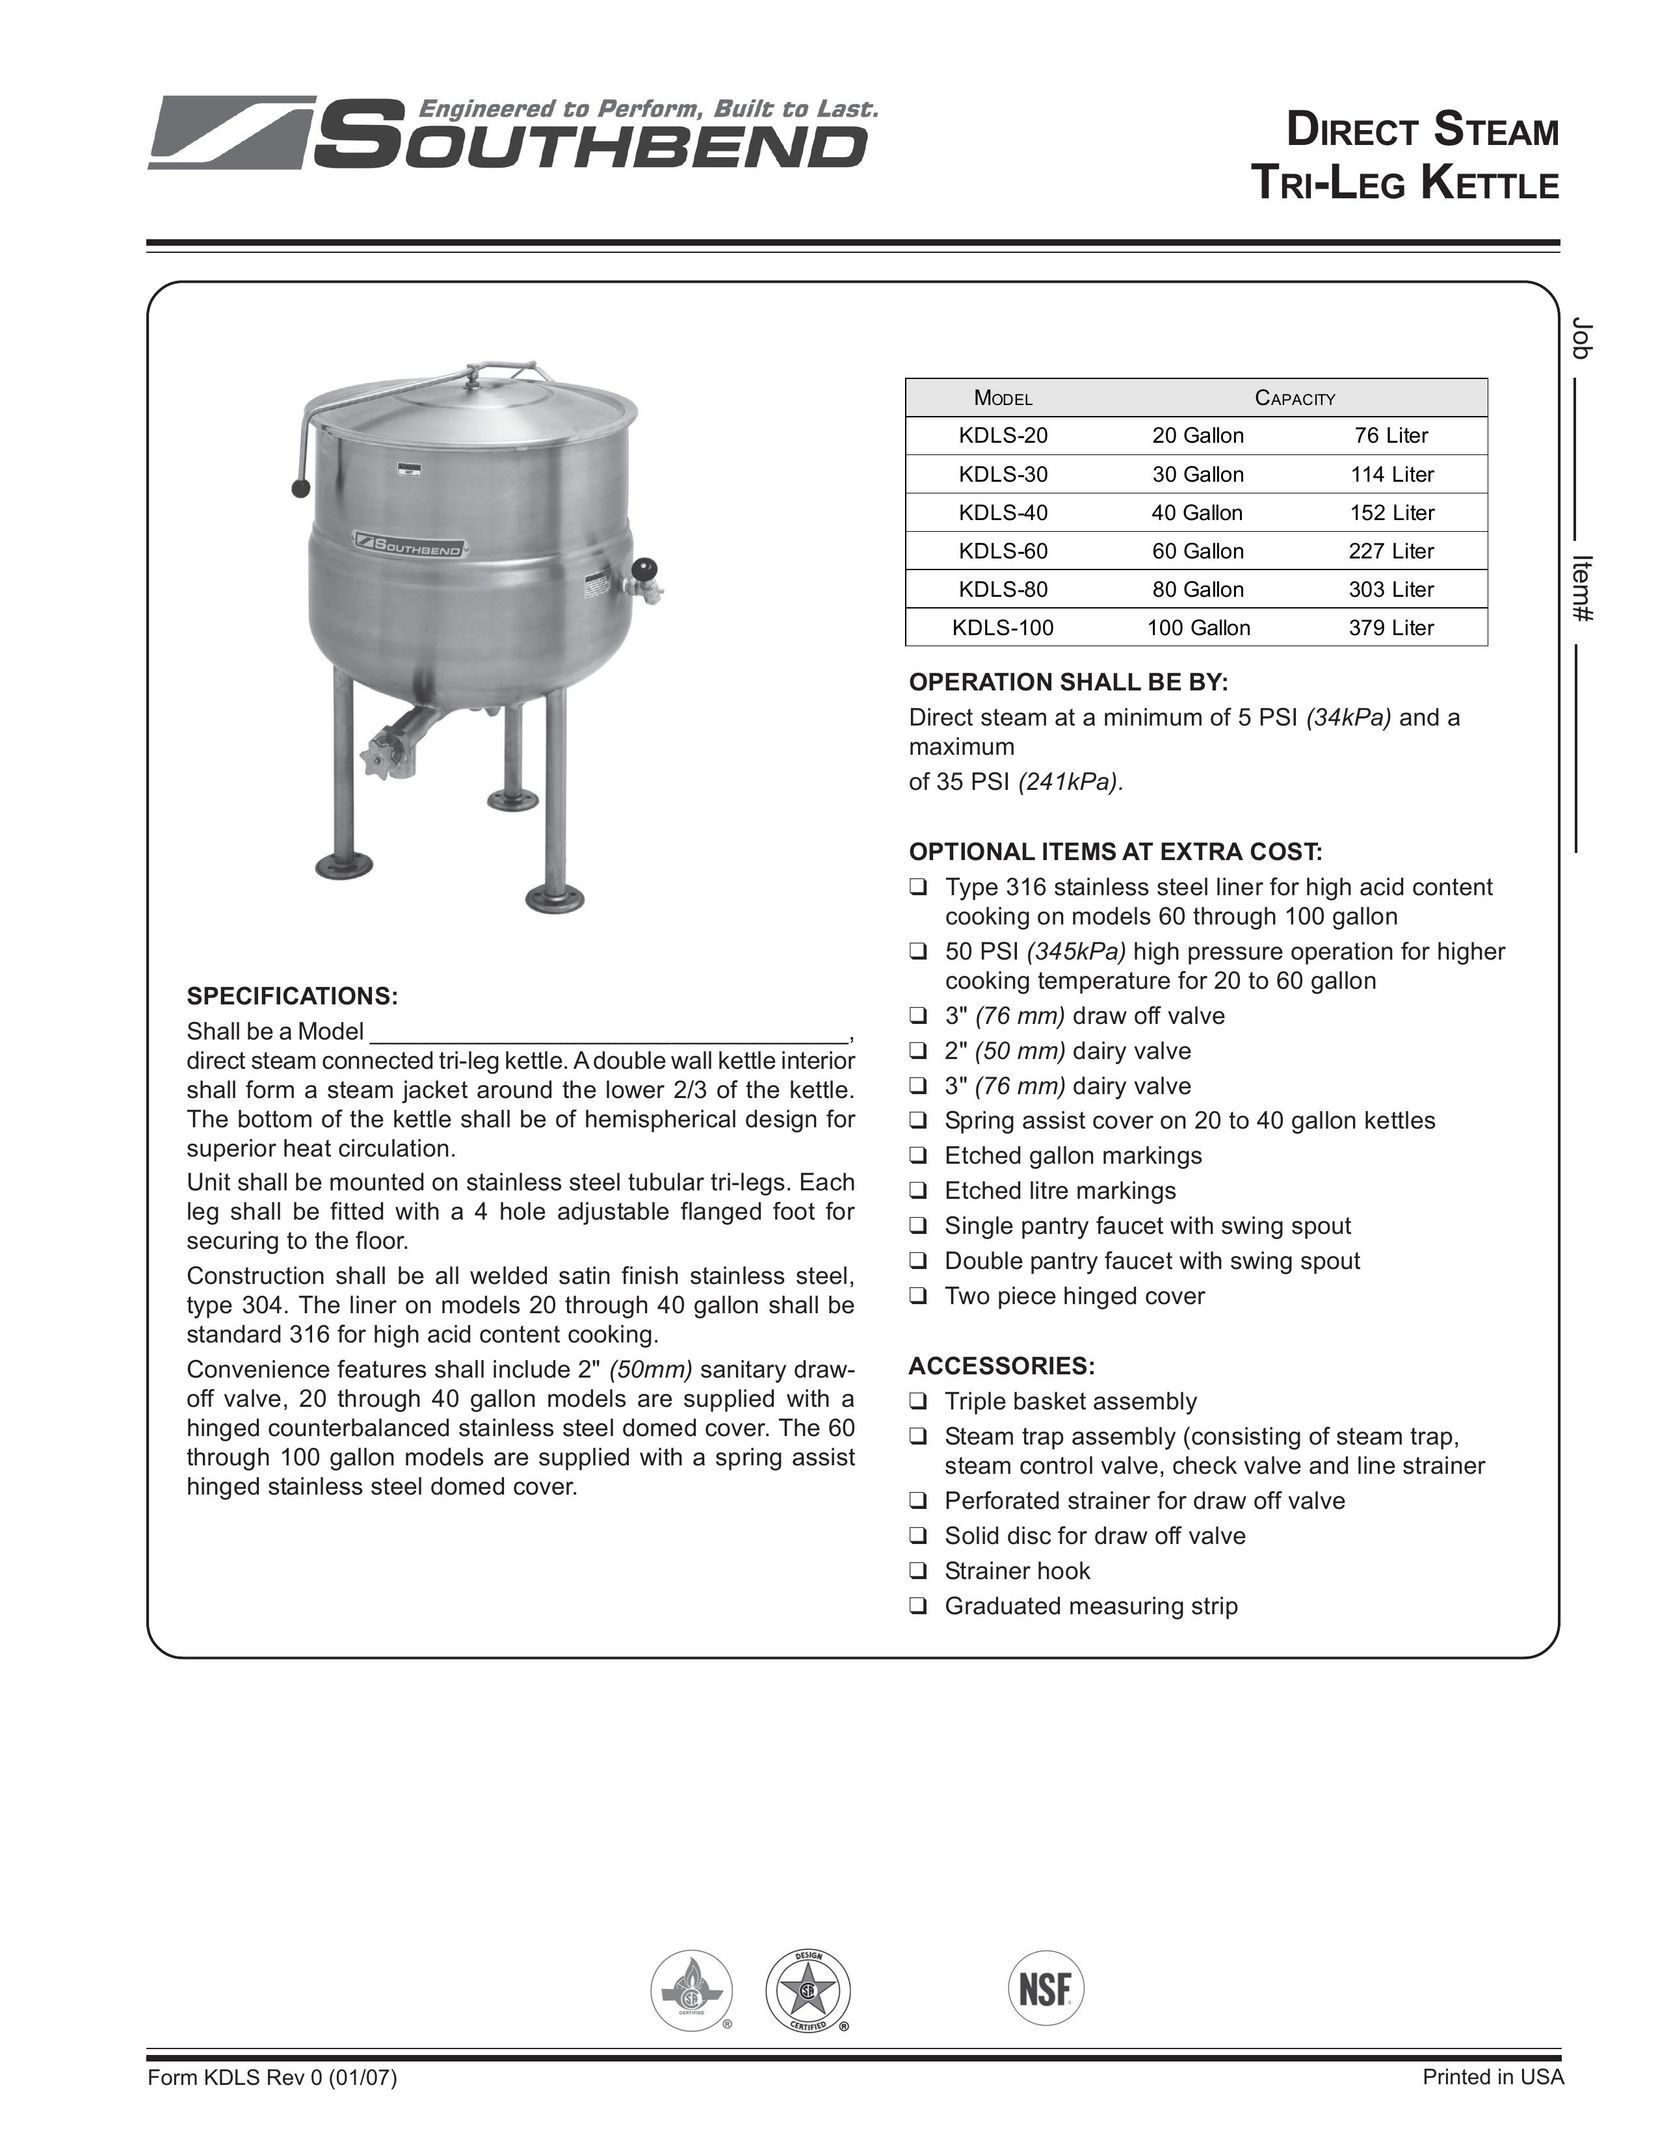 Southbend KDLS-100 Hot Beverage Maker User Manual